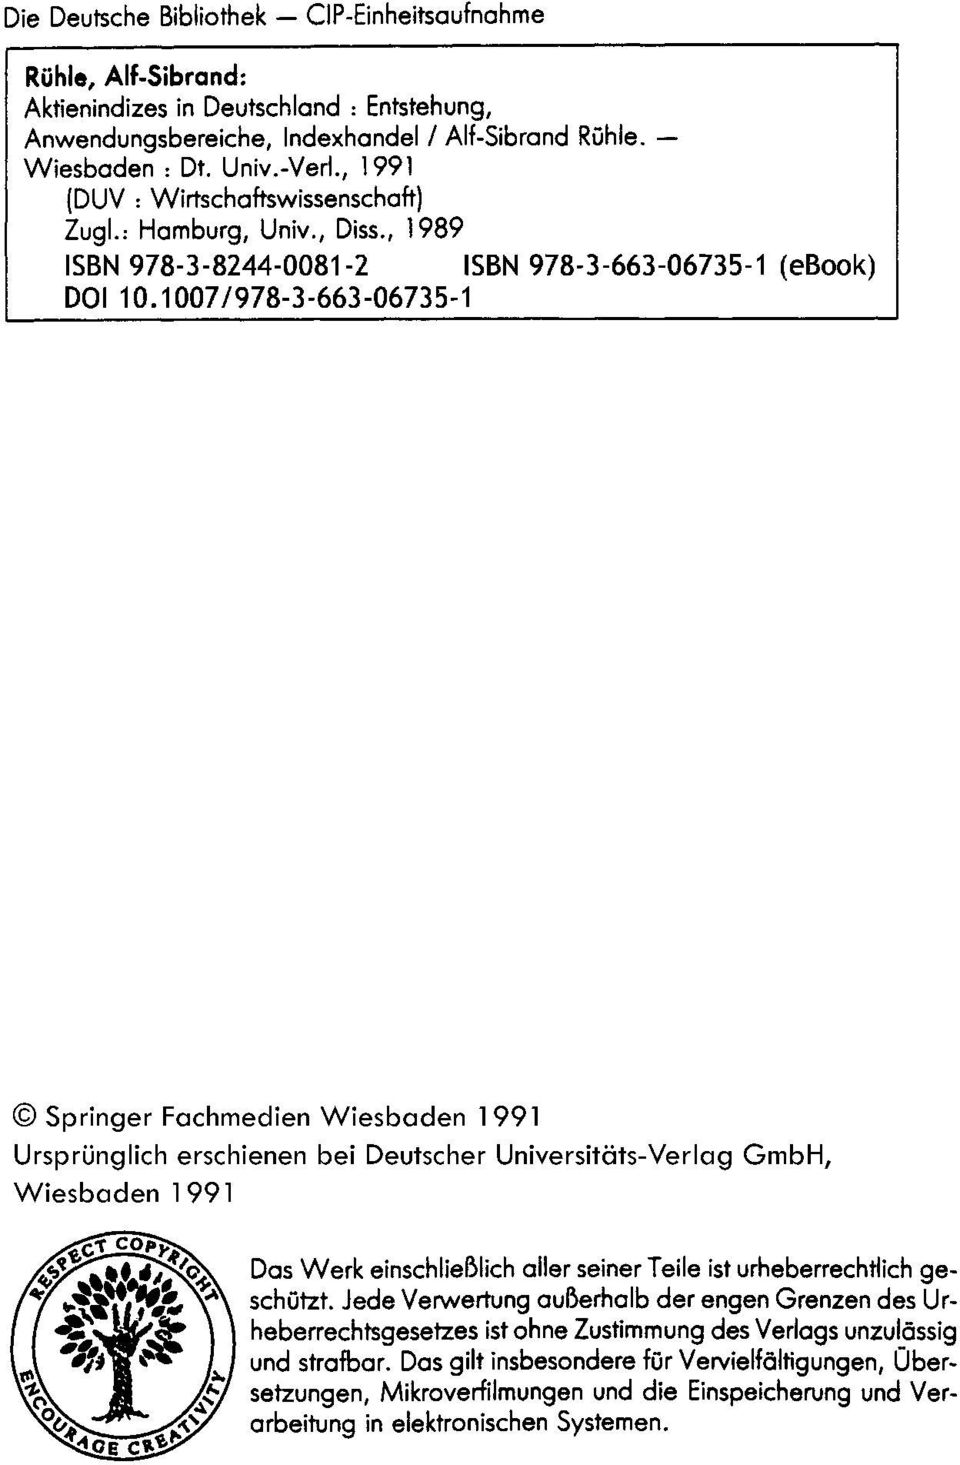 1007/978-3-663-06735-1 Springer Fachmedien Wiesbaden 1991 UrsprUnglich erschienen bei Deutscher Universităts-Verlag GmbH, Wiesbaden 1 991 Das Werk einschlieblich aller seiner Teile ist